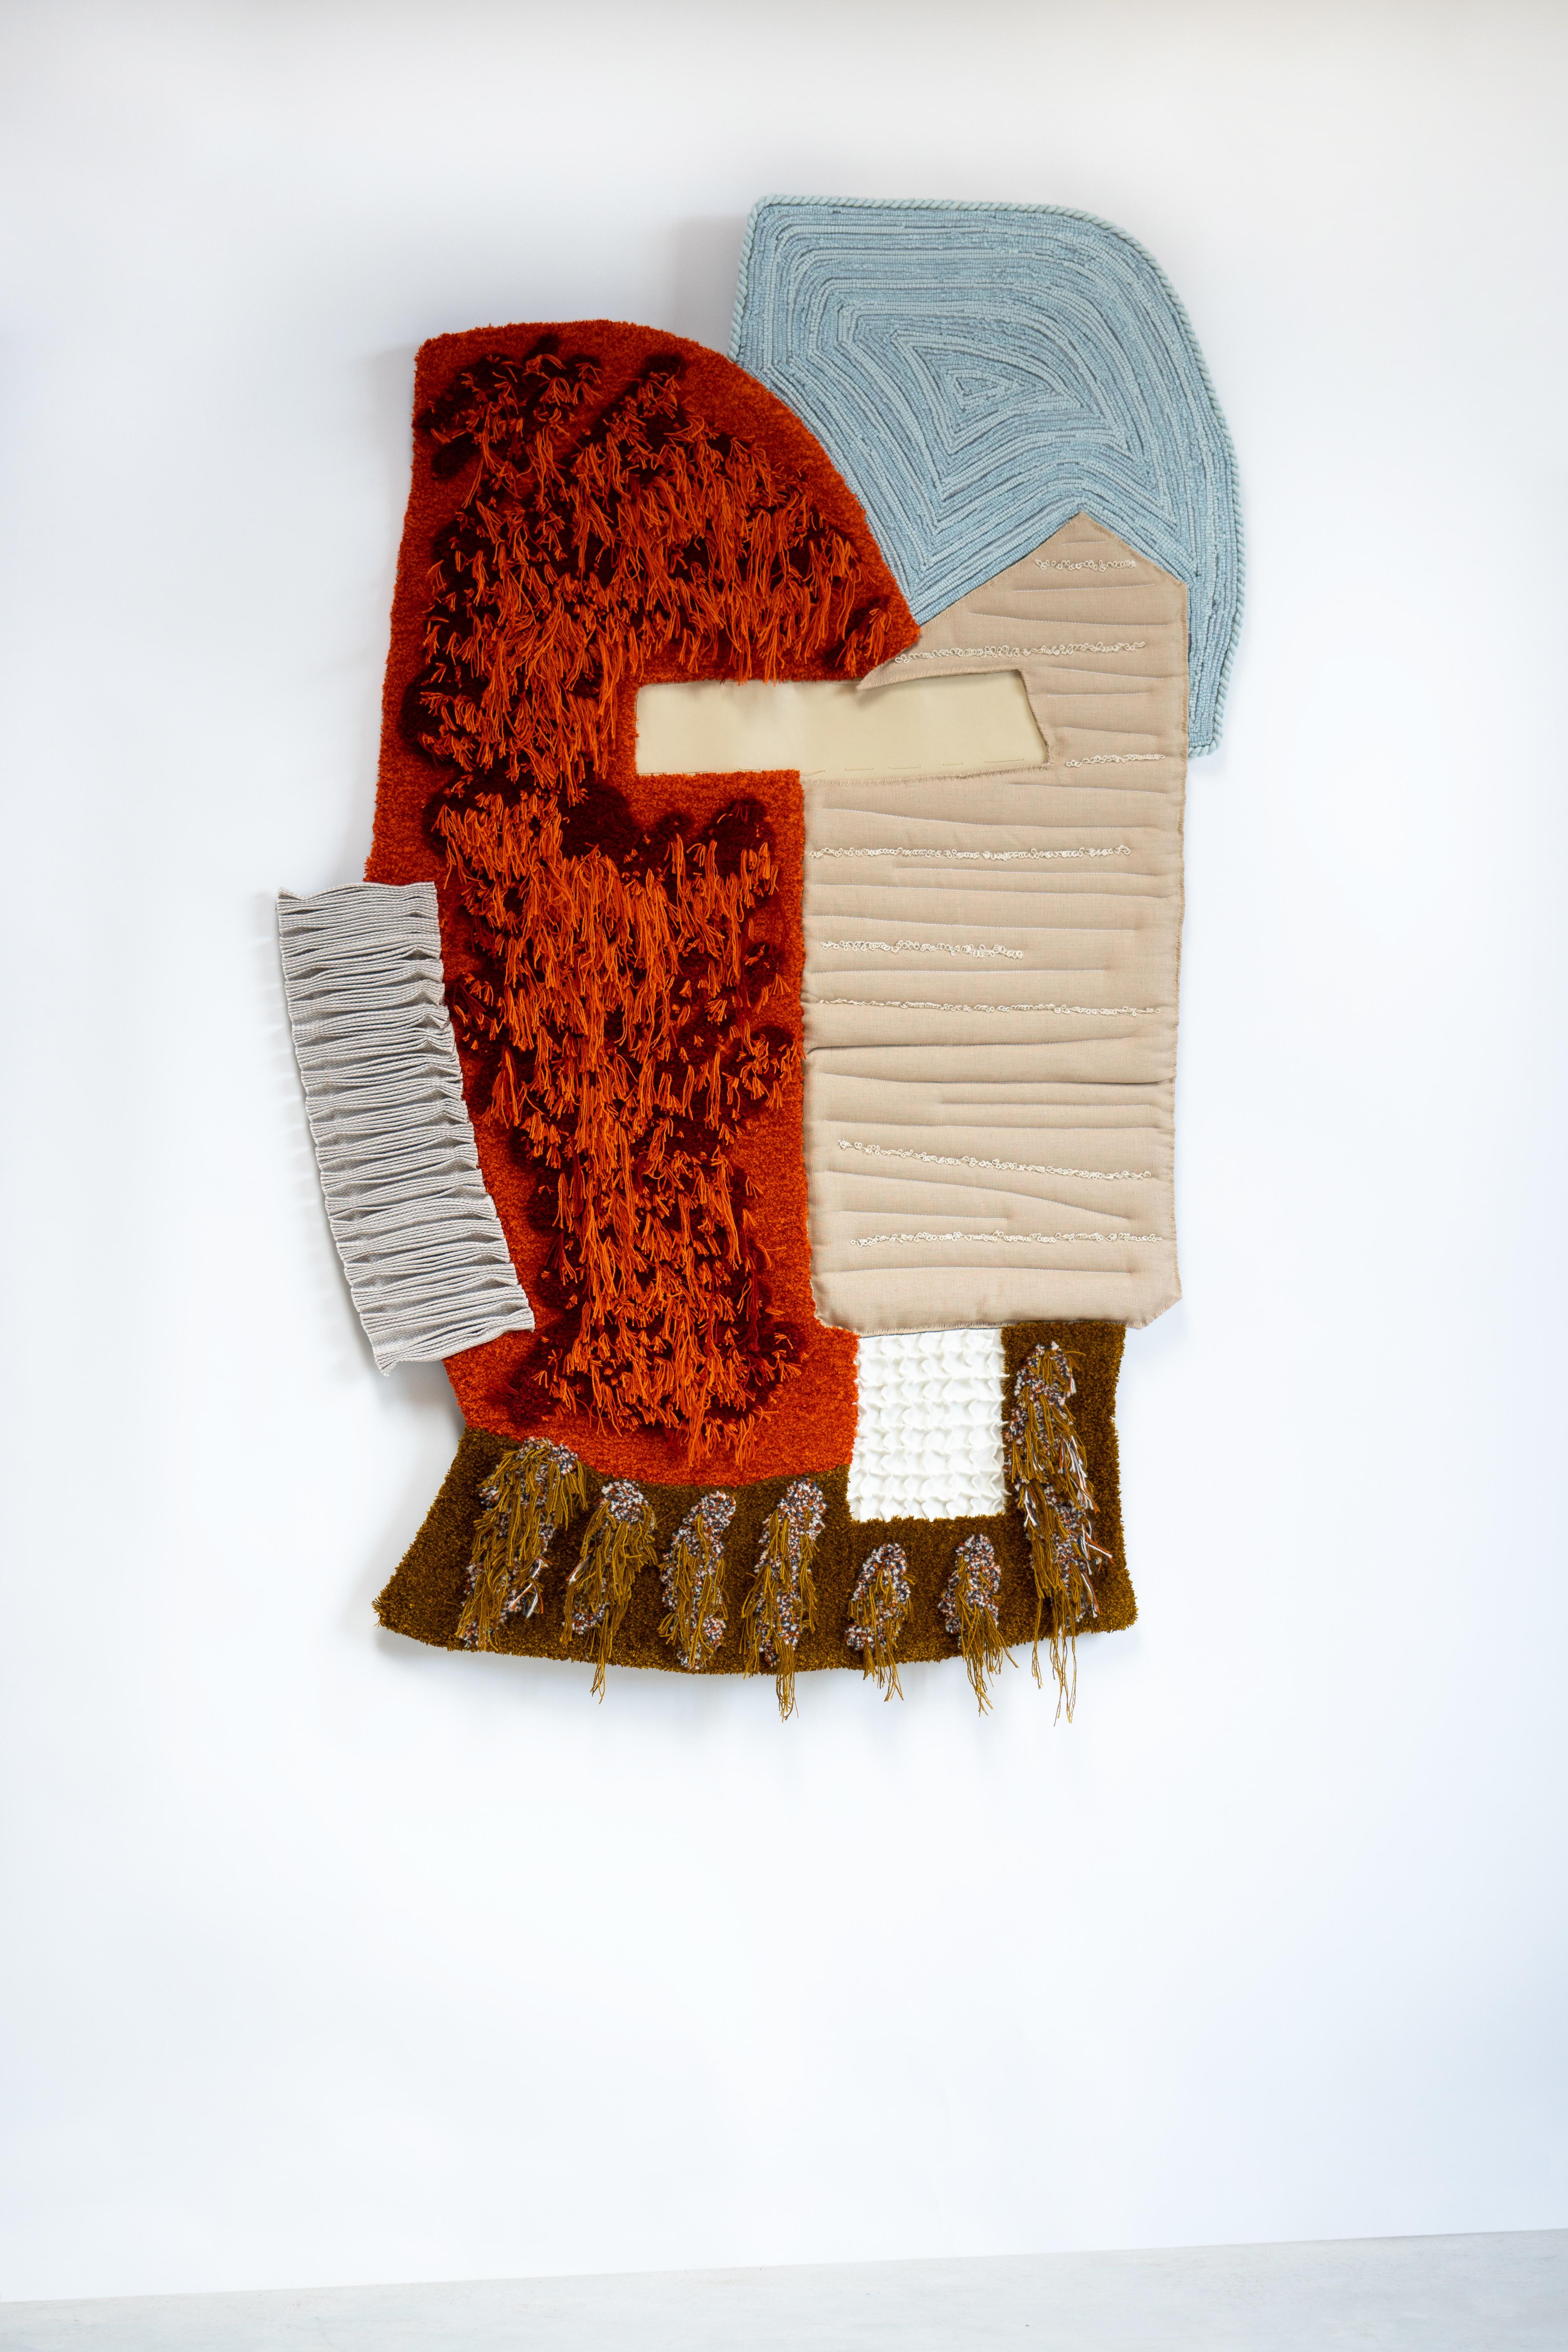 Textile Collage - Rusty - Art by Kiki van eijk